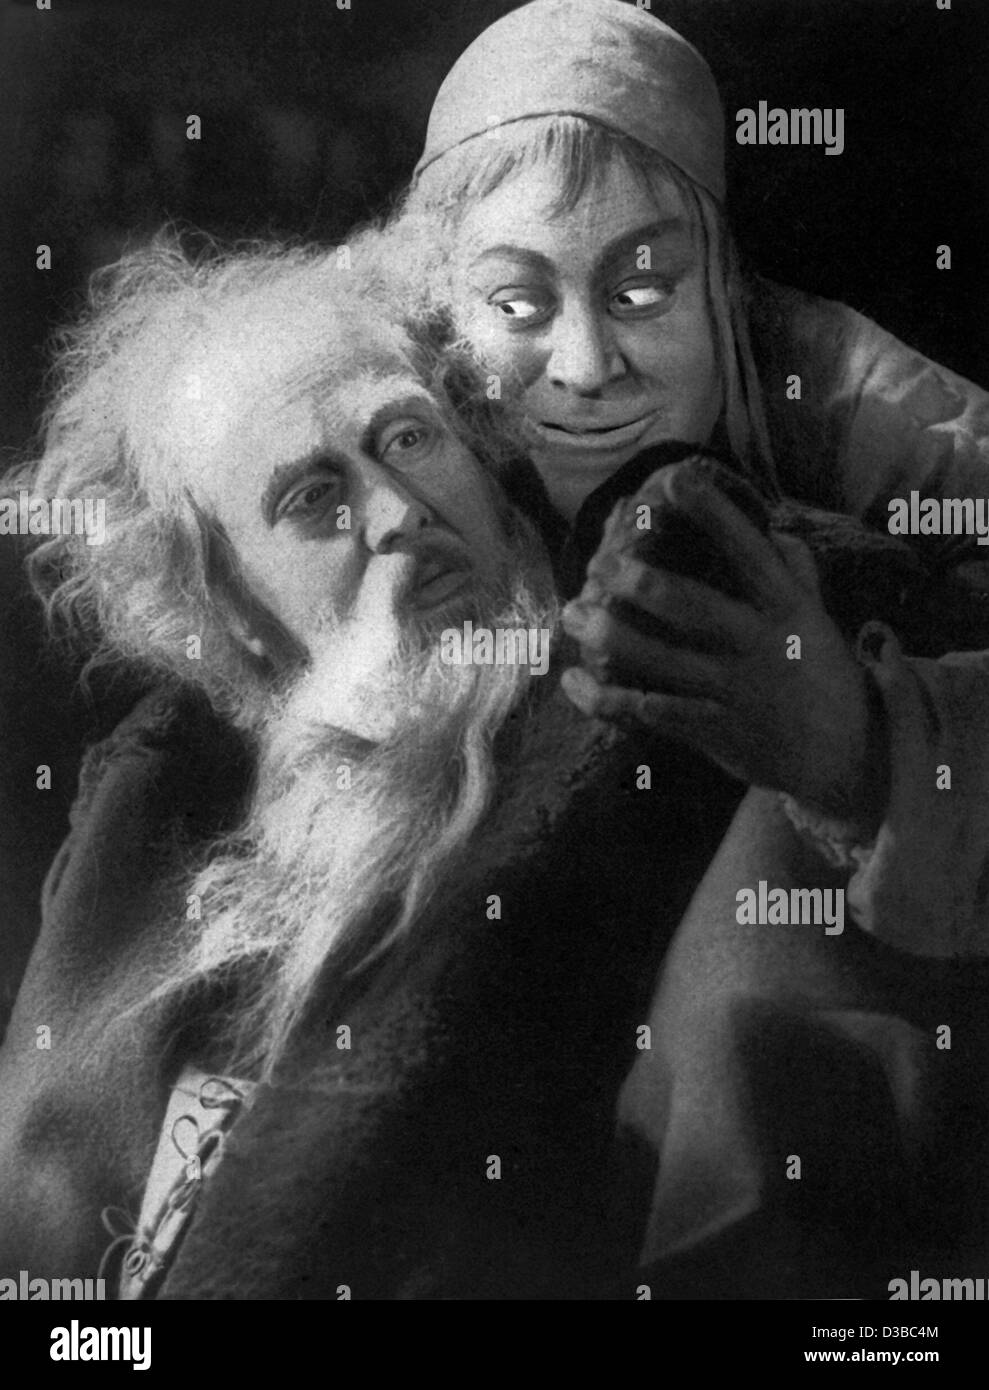 (Dpa file) - Attore EMIL JANNINGS (R) come Mephisto e attore svedese Goesta Ekmann come Faust agire in una scena di un film di Murnau's 'Faust', Germania, 1926. Jannings è nato il 23 luglio 1884 a Rorschach, Svizzera, e dopo aver giocato in diverse produzioni tedesche, compresi " i fratelli Karamazov " (1920) Foto Stock